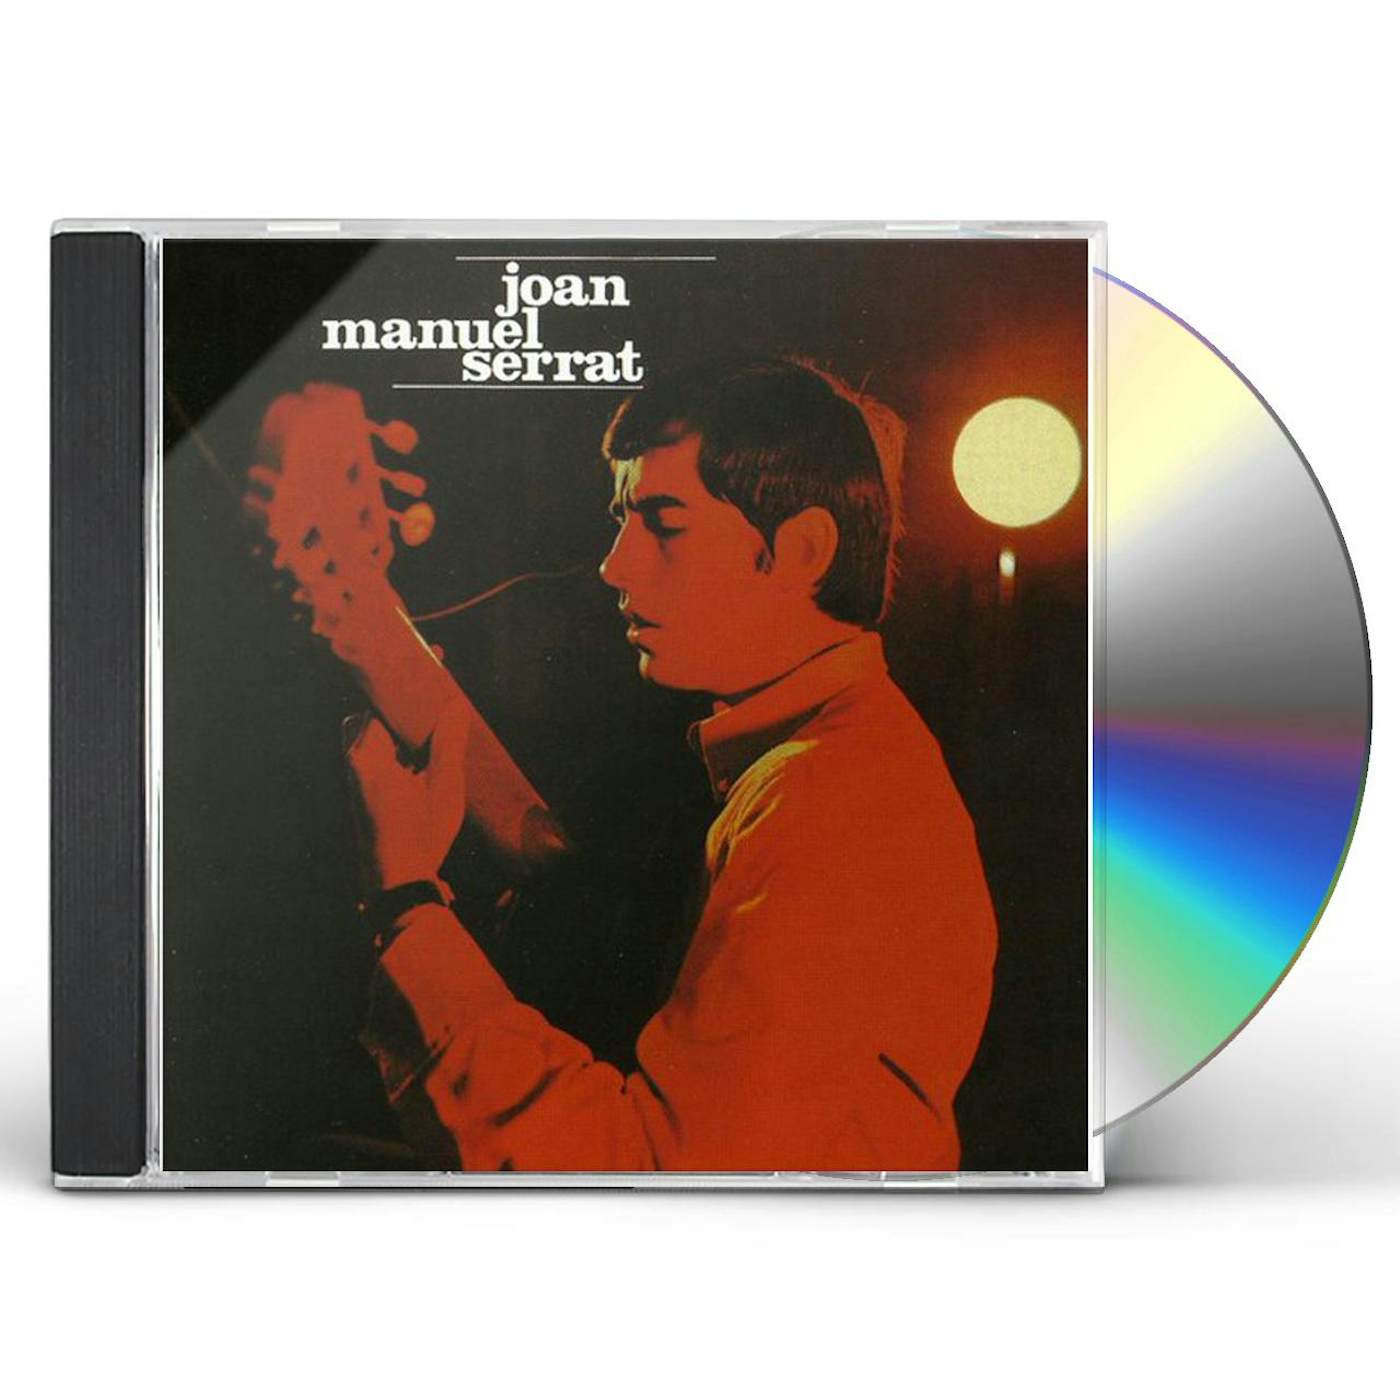 JOAN MANUEL SERRAT (ARA QUE TINC VINT) CD